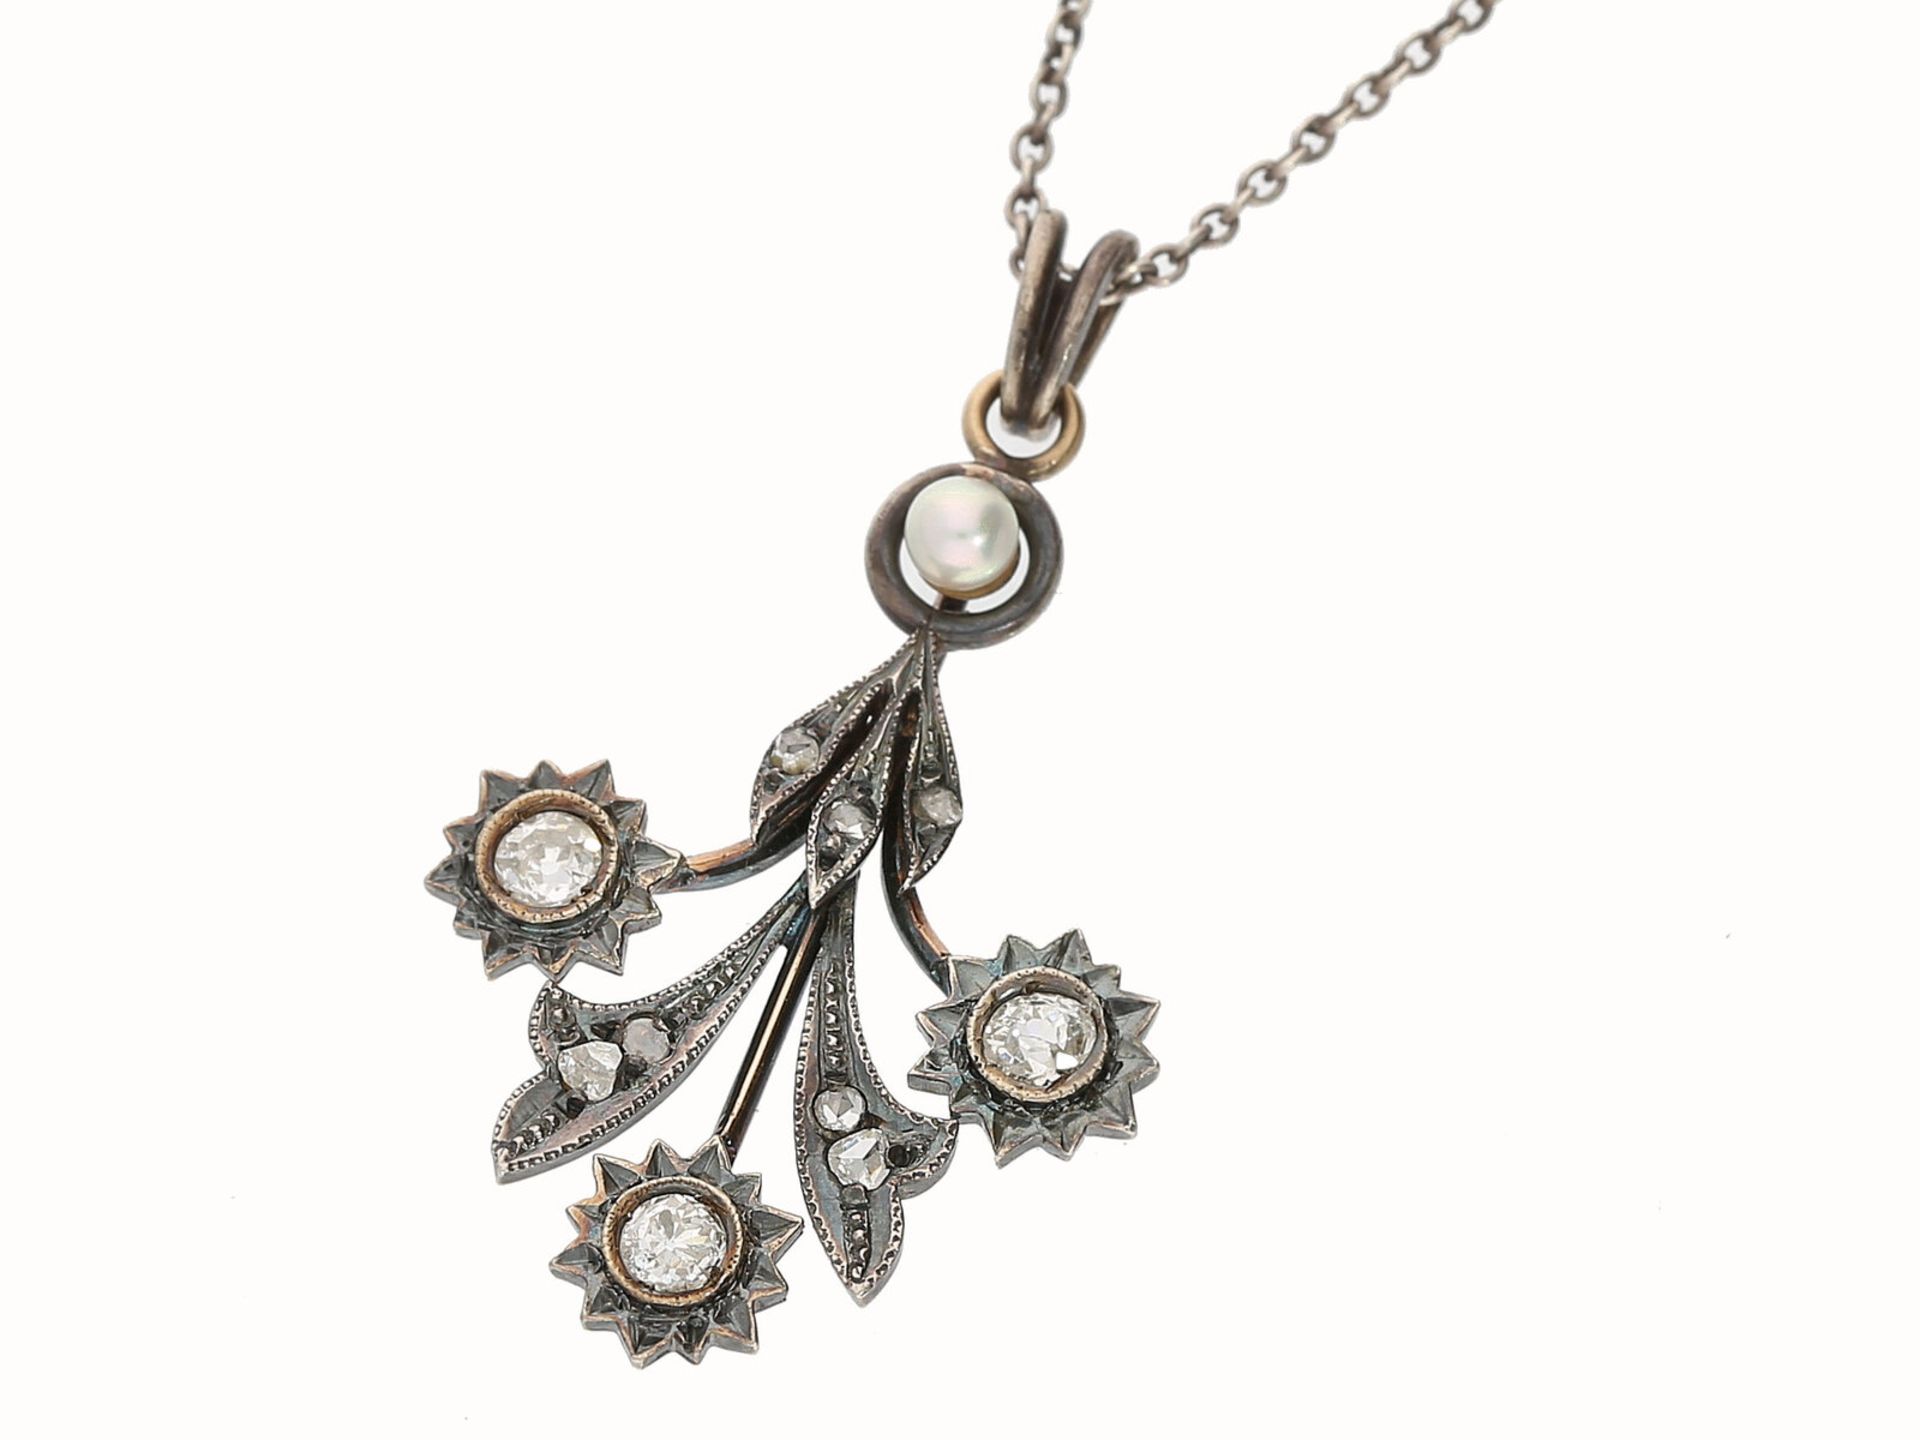 Kette/Collier/Anhänger: kleines antikes Blumencollier mit Altschliff-Diamanten und Perlen, 18K Gold/ - Image 2 of 2